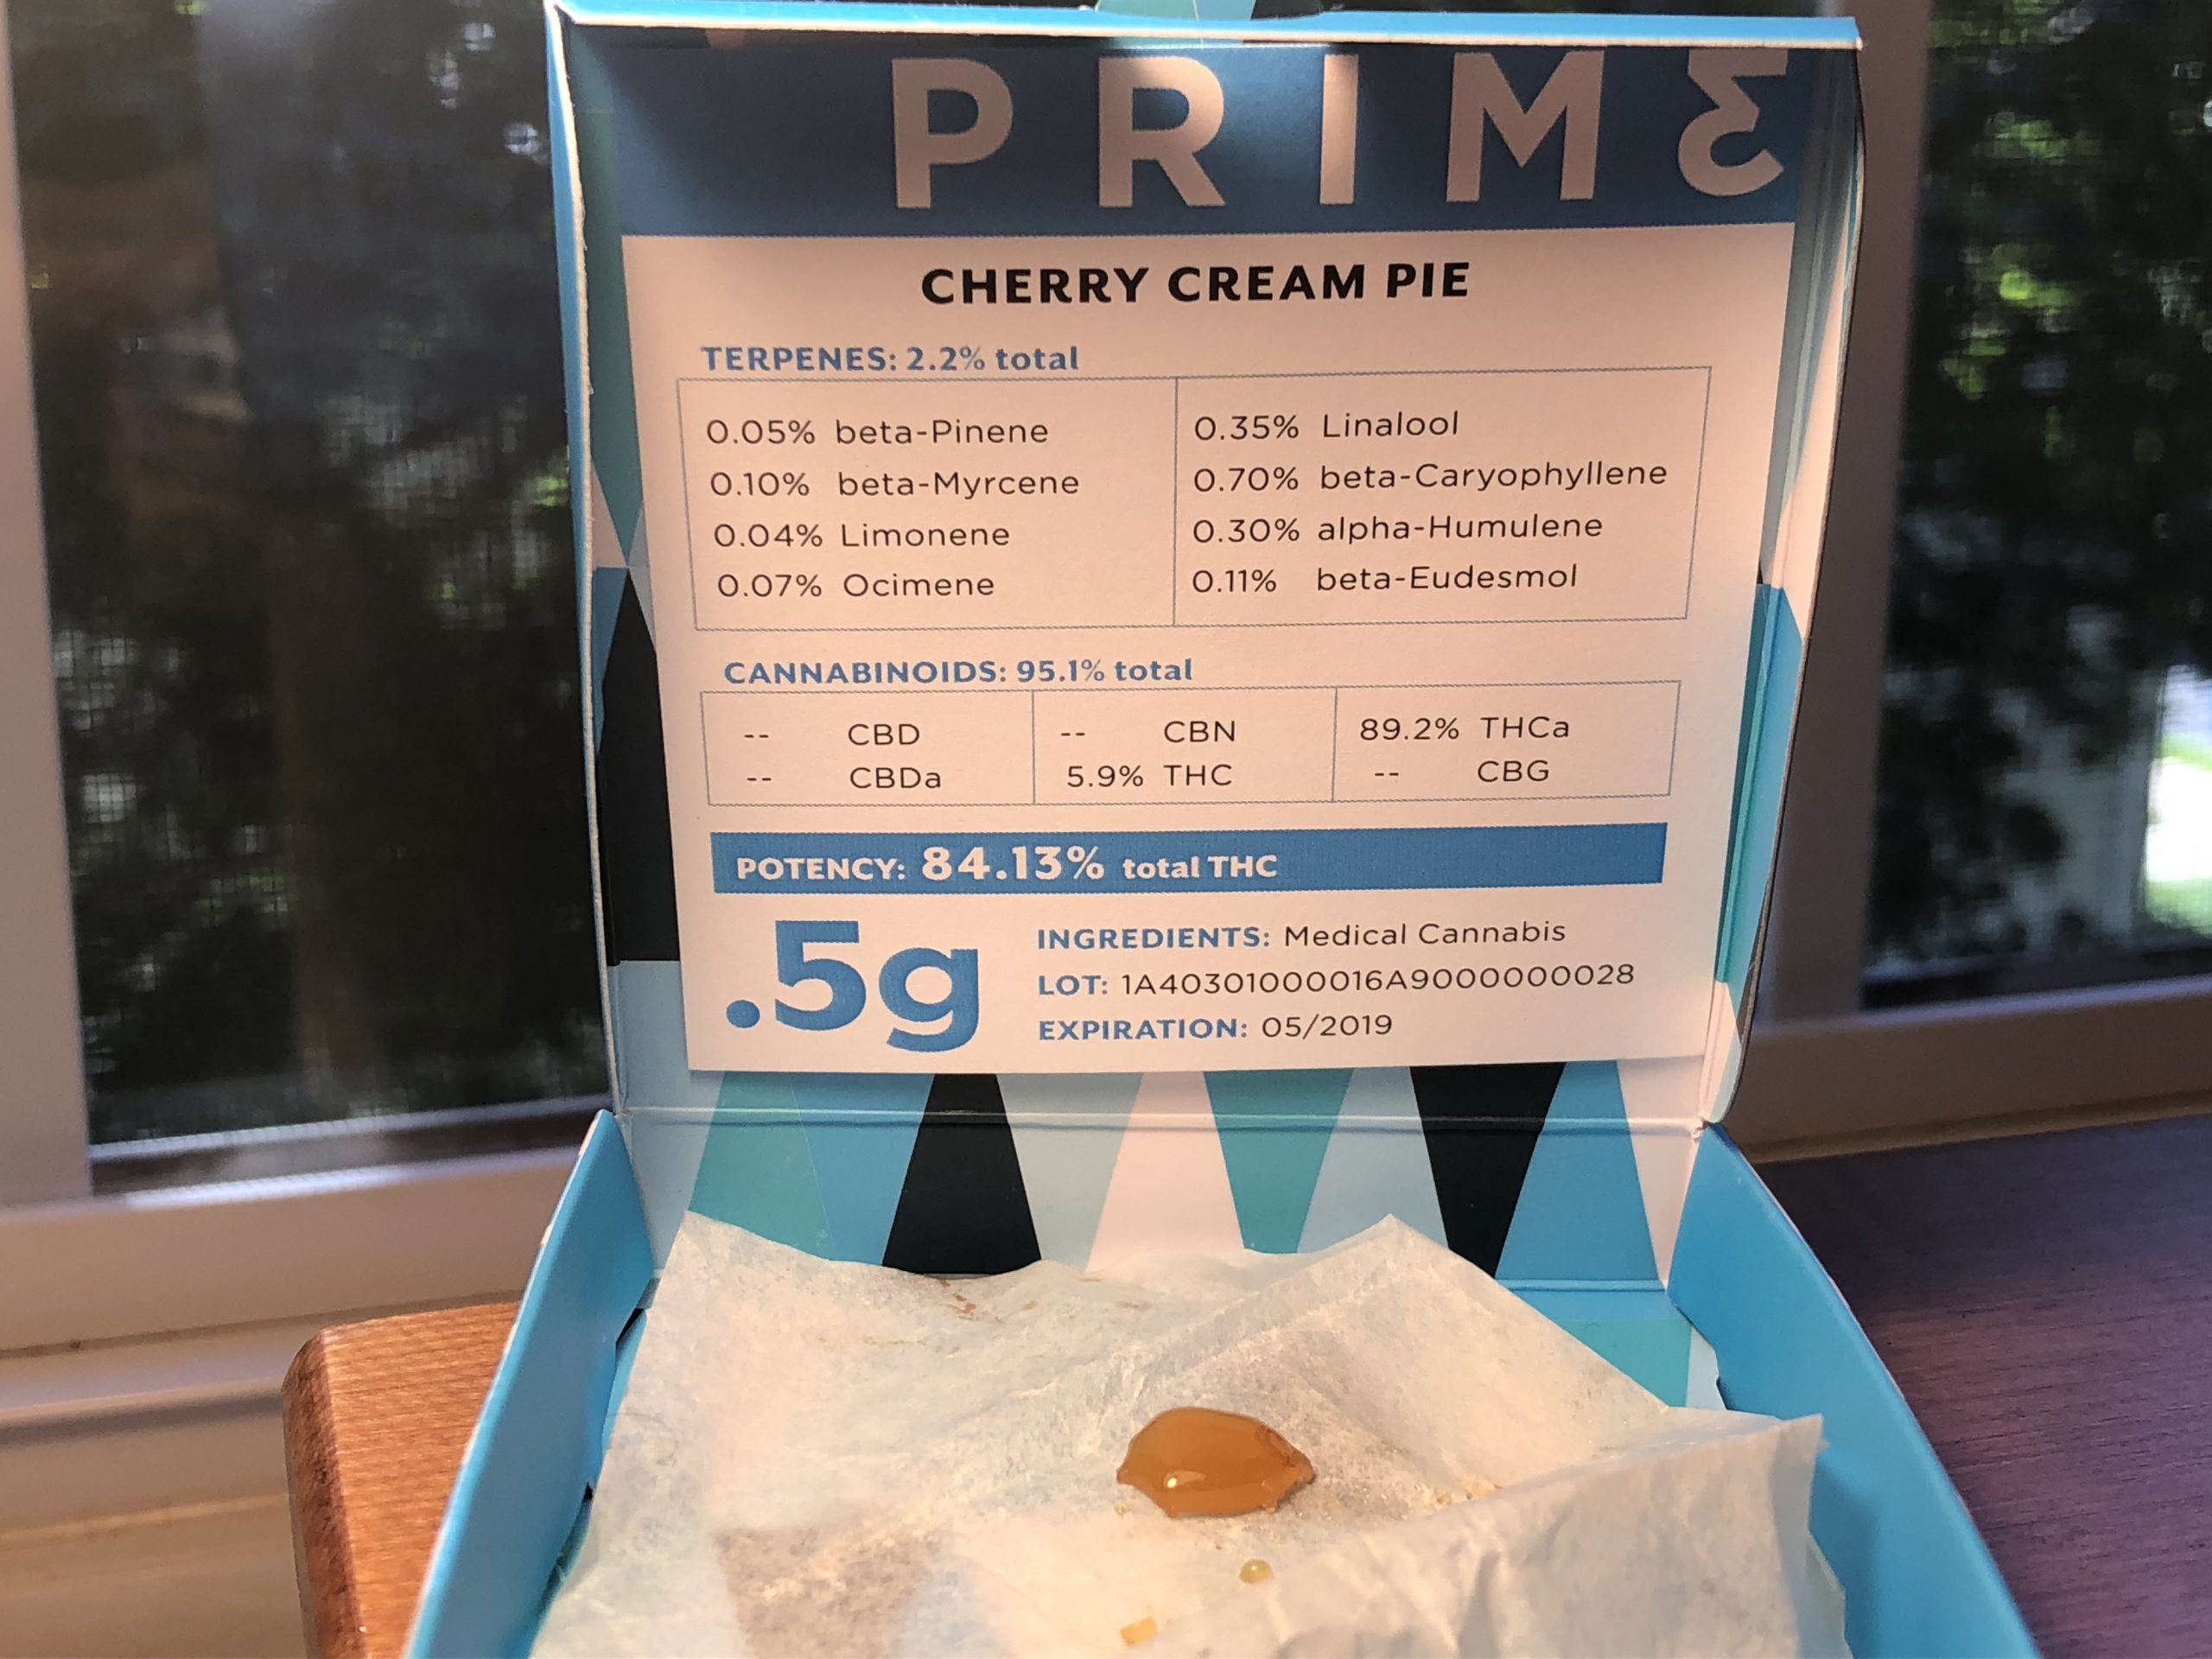 Cherry Cream Pie Shatter test results